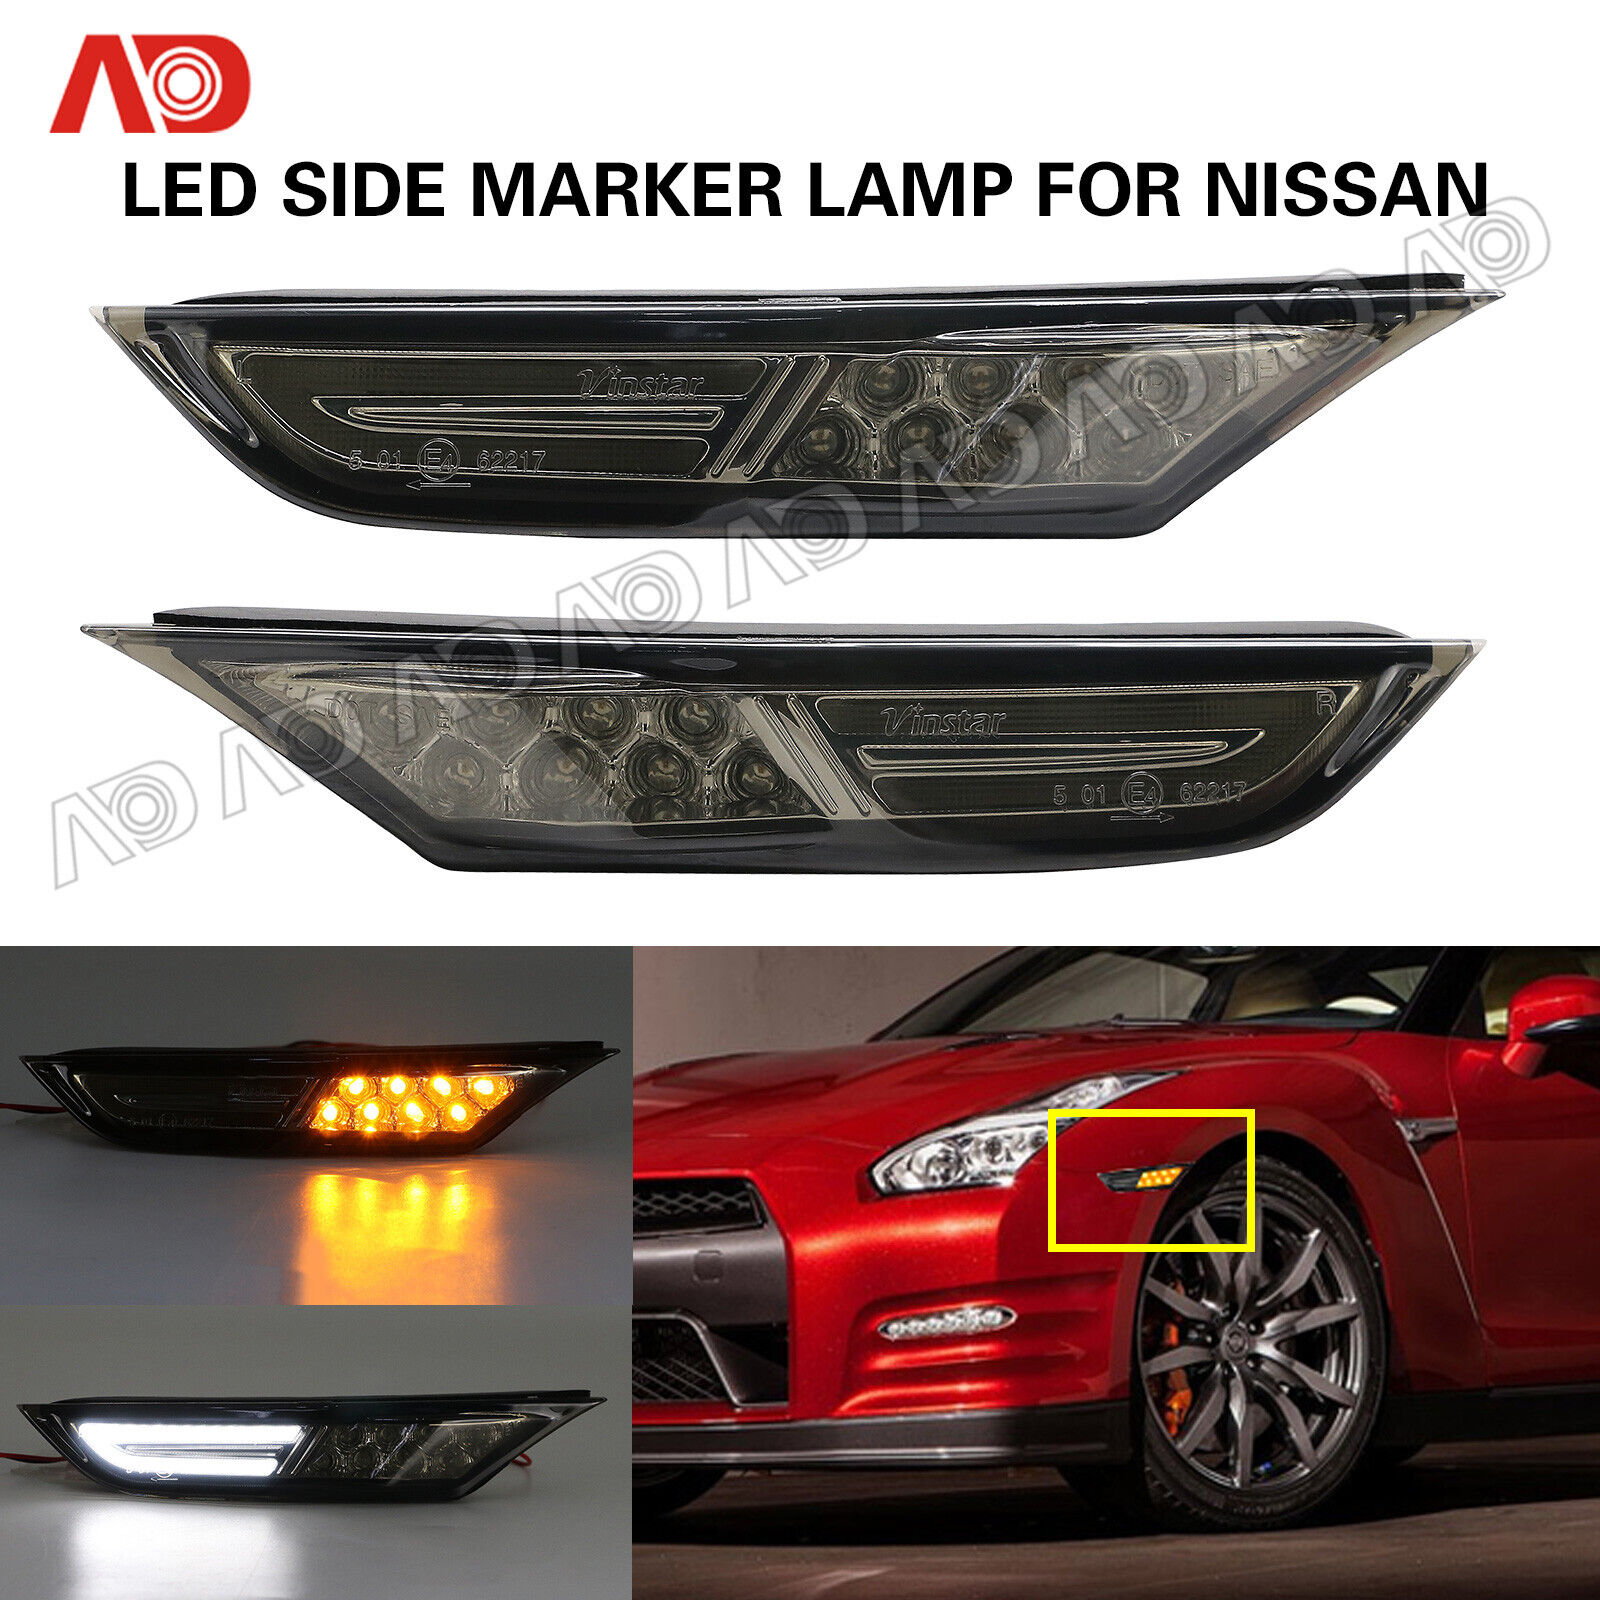 2X White Amber LED Side Marker Light Turn Signal Lamp For 2007-18 Nissan GTR R35